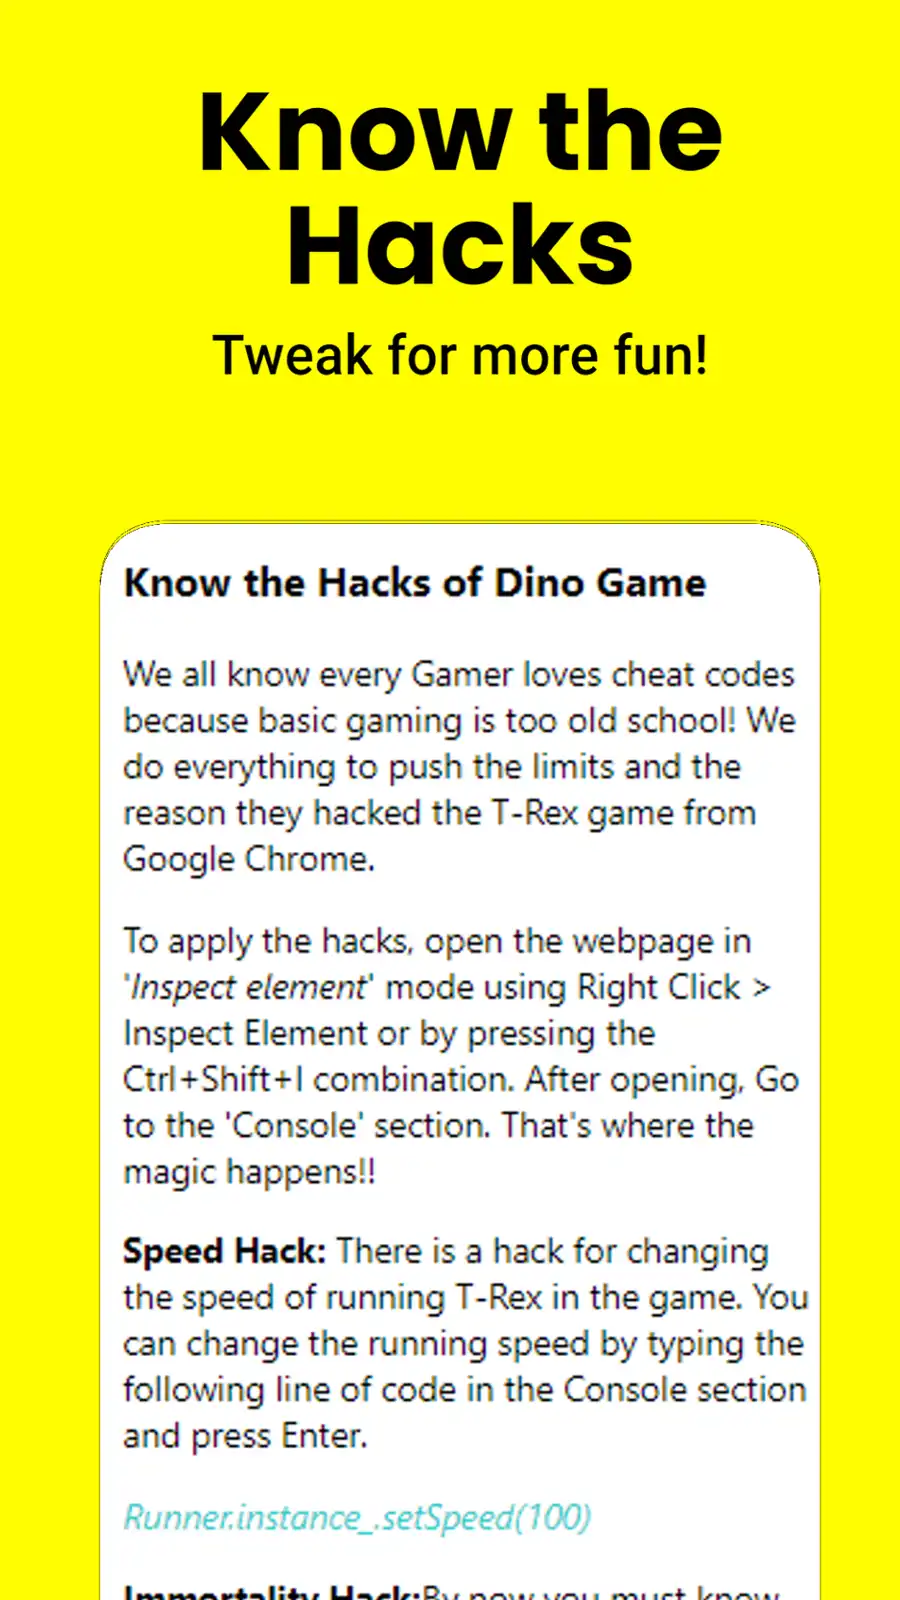 دانلود ابزار وب یا برنامه وب Google Dino Game